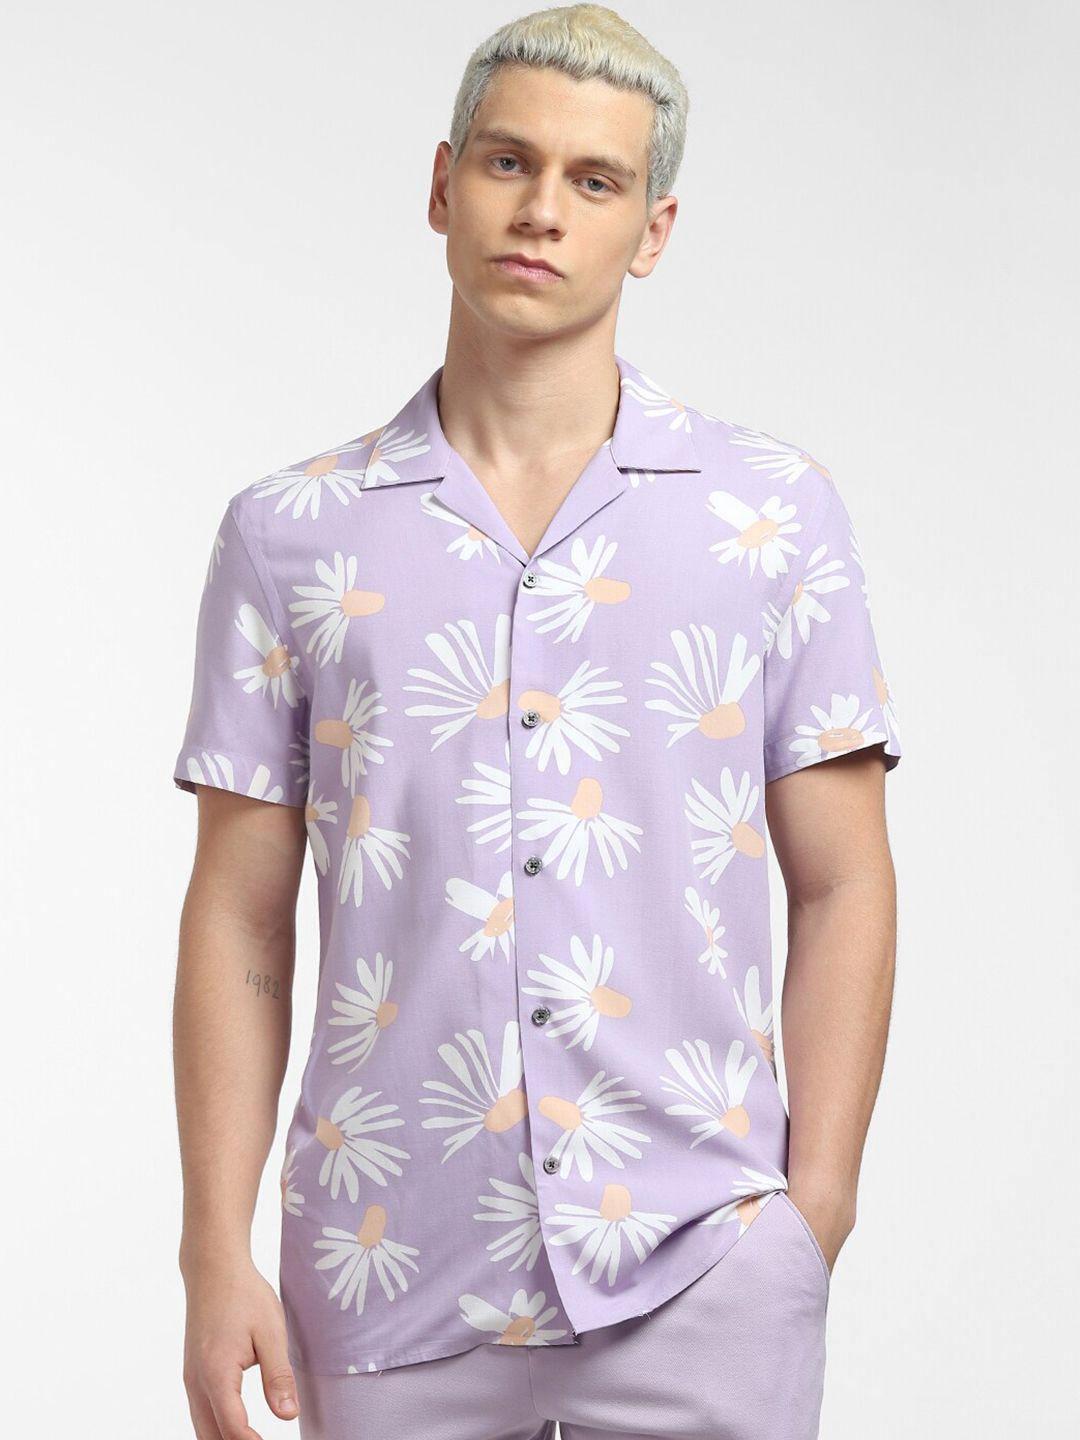 jack-&-jones-men-purple-floral-printed-casual-shirt